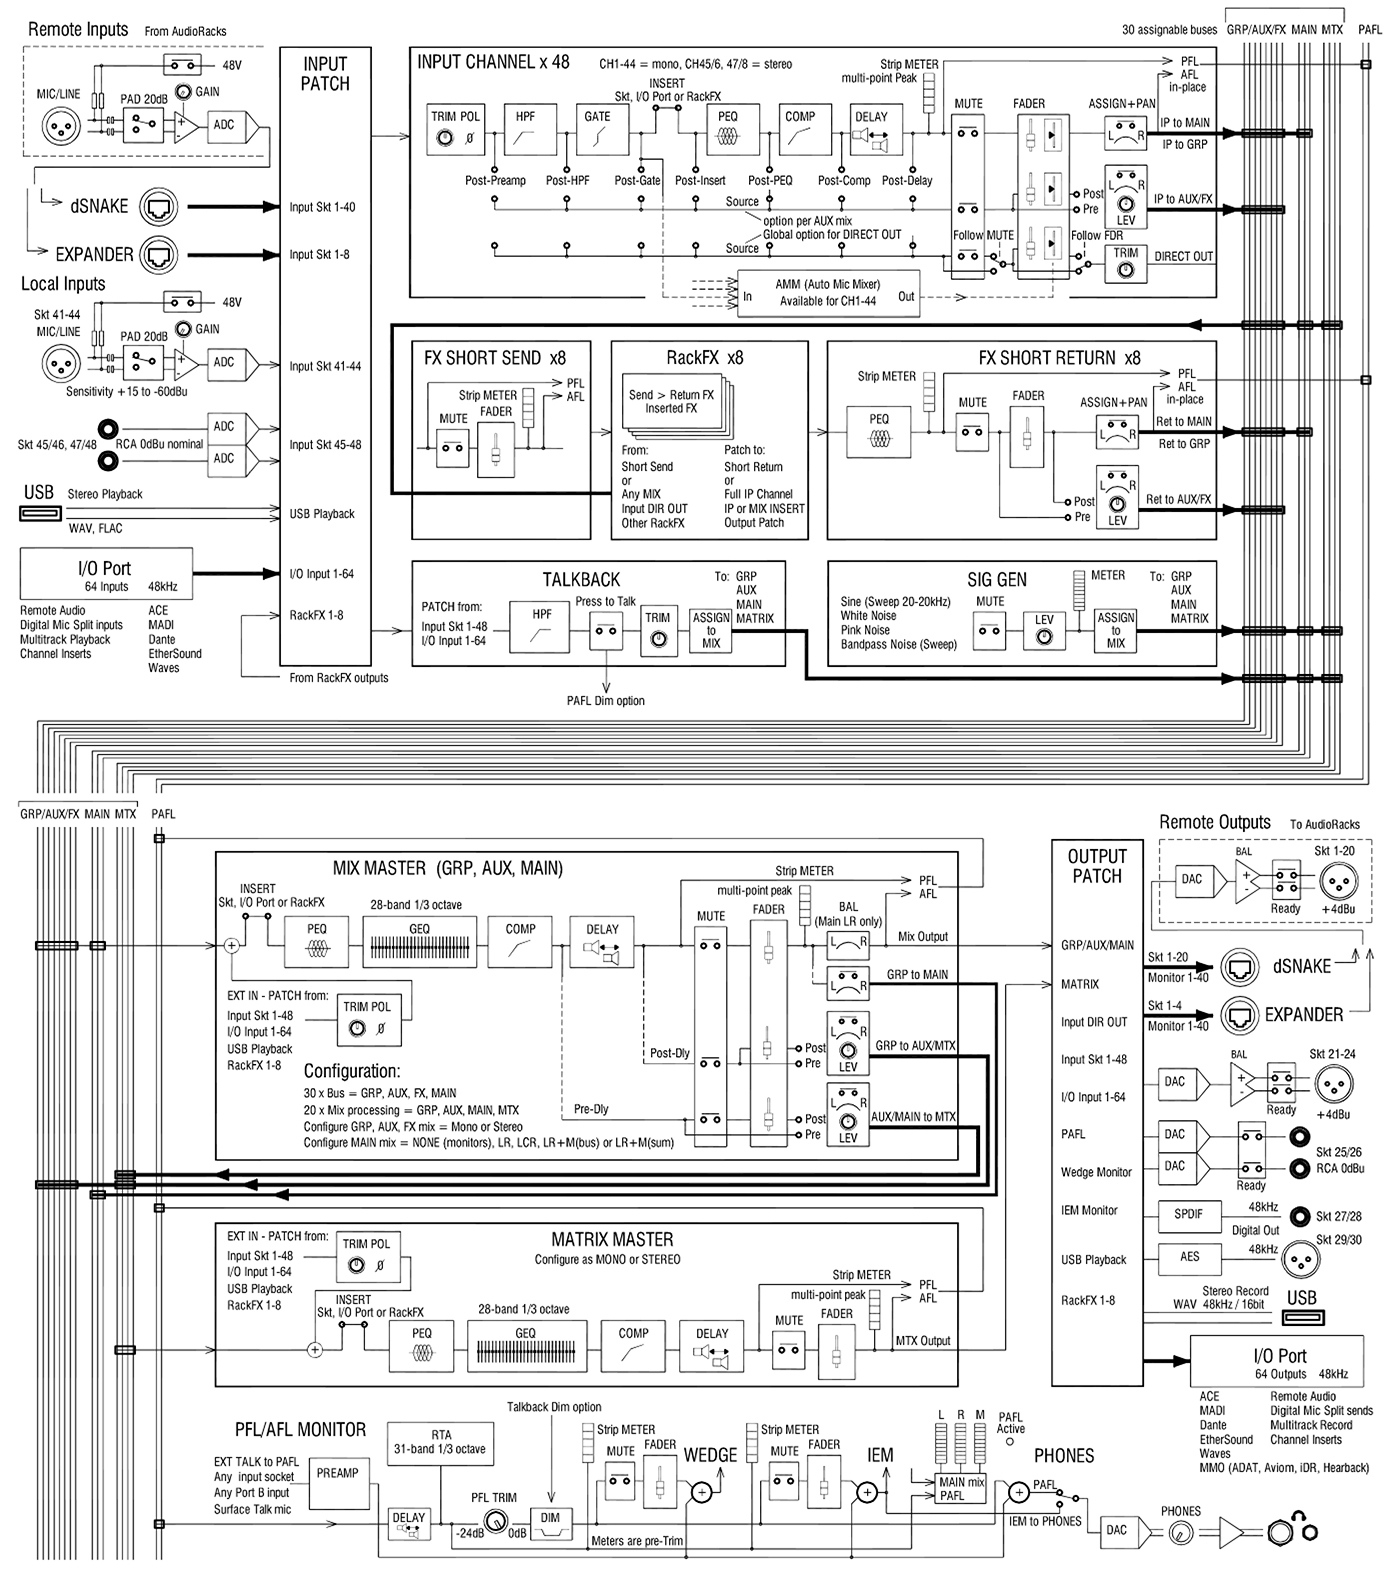 Схема маршрутизации сигнала ALLEN & HEATH GLD-112